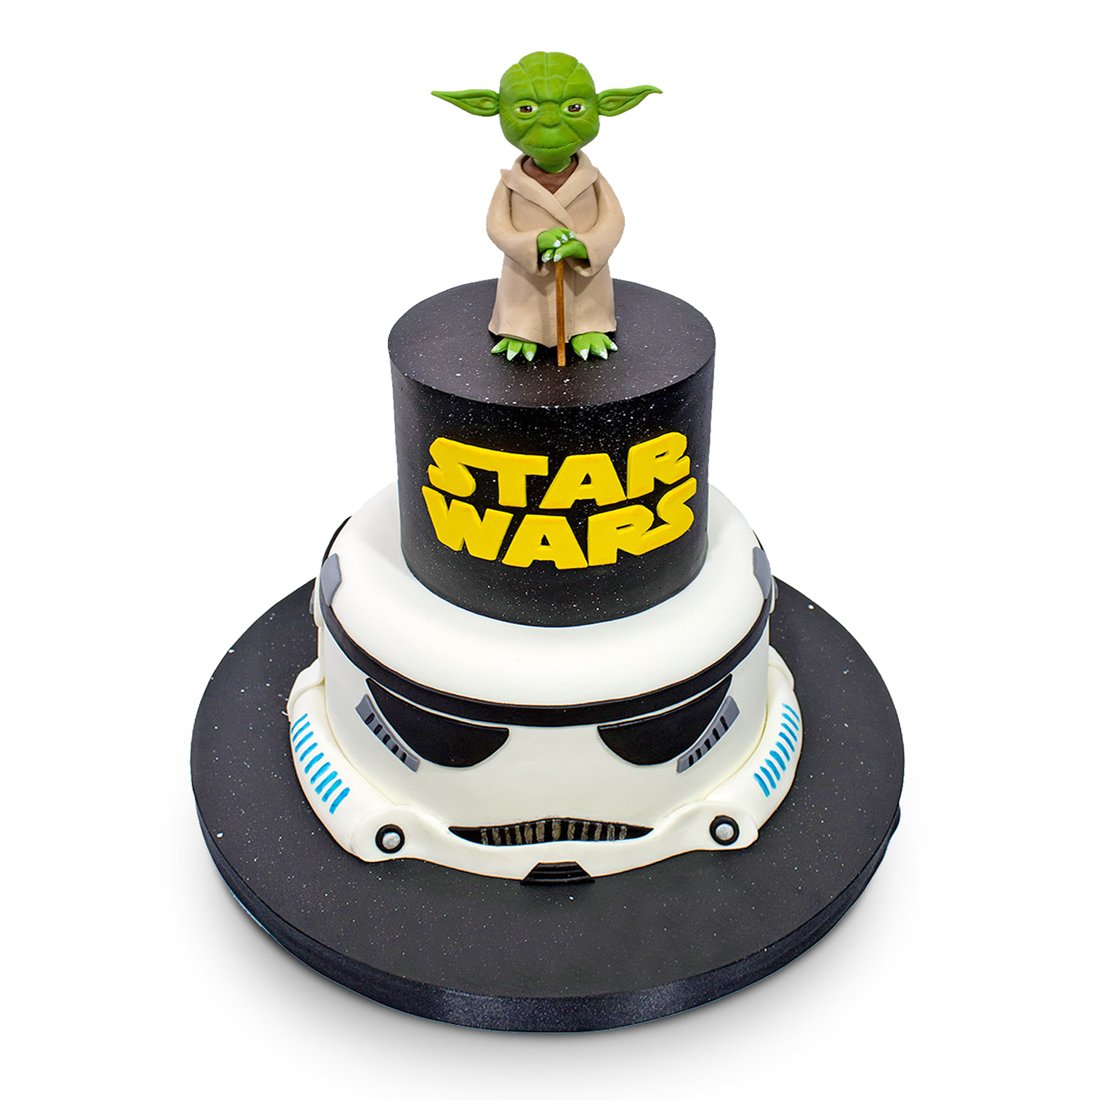 Star Wars Doğum Günü Pastası